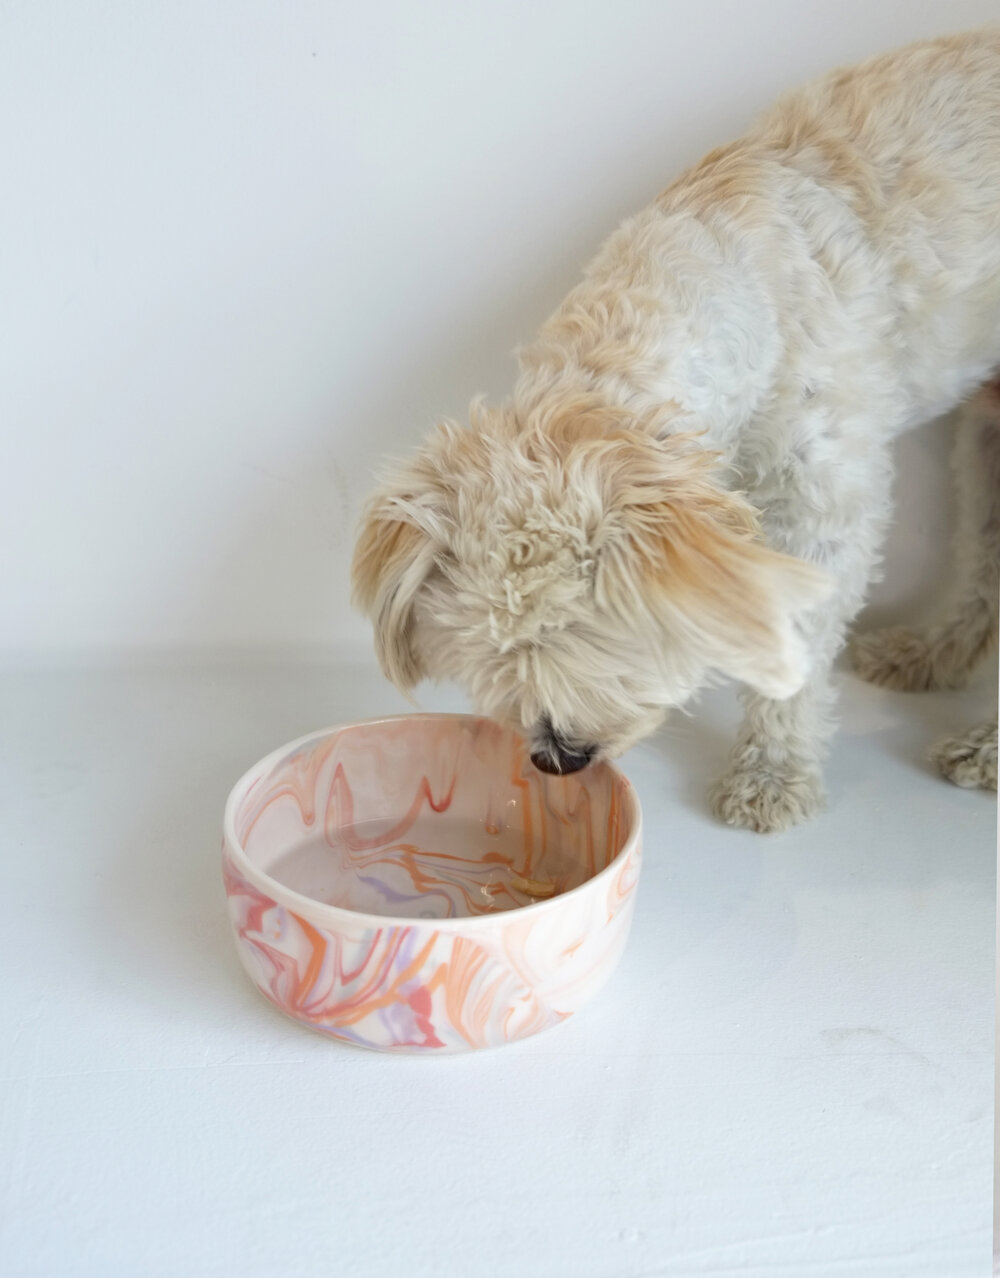 Lisbon Marble Pet Bowl - Designer Dog Bowls and Ceramic Pet Dishes